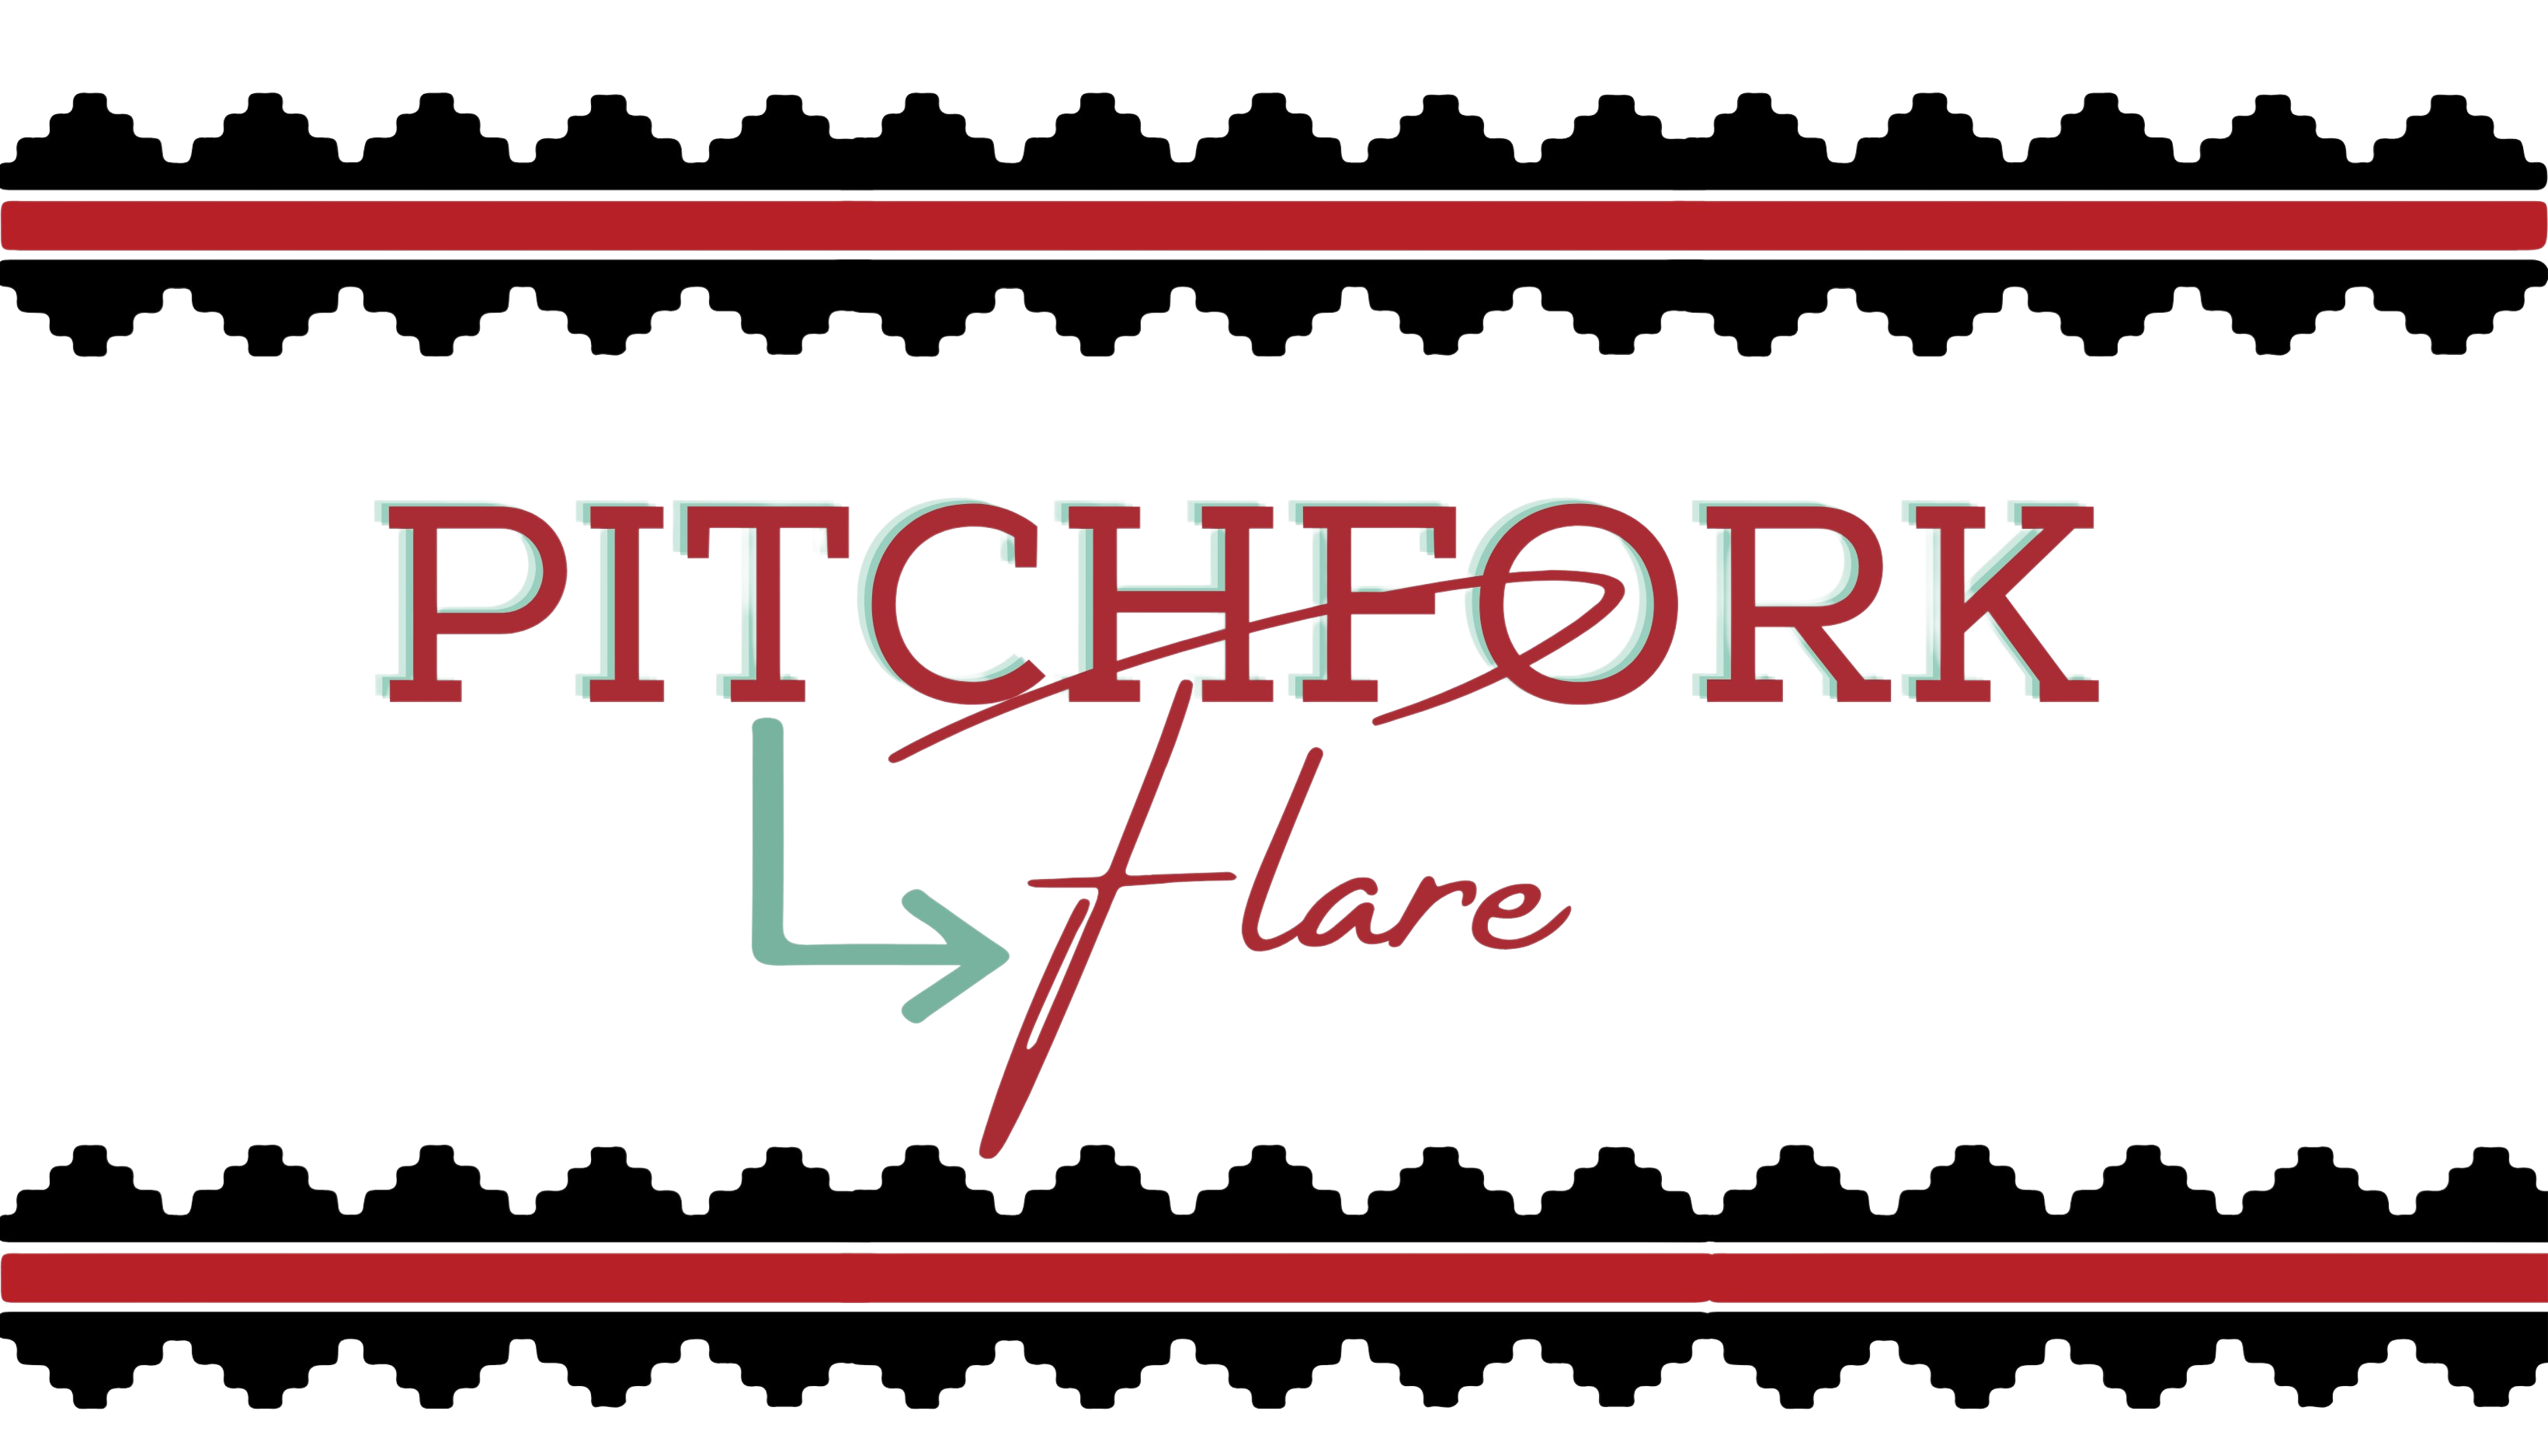 Pitchfork Flare